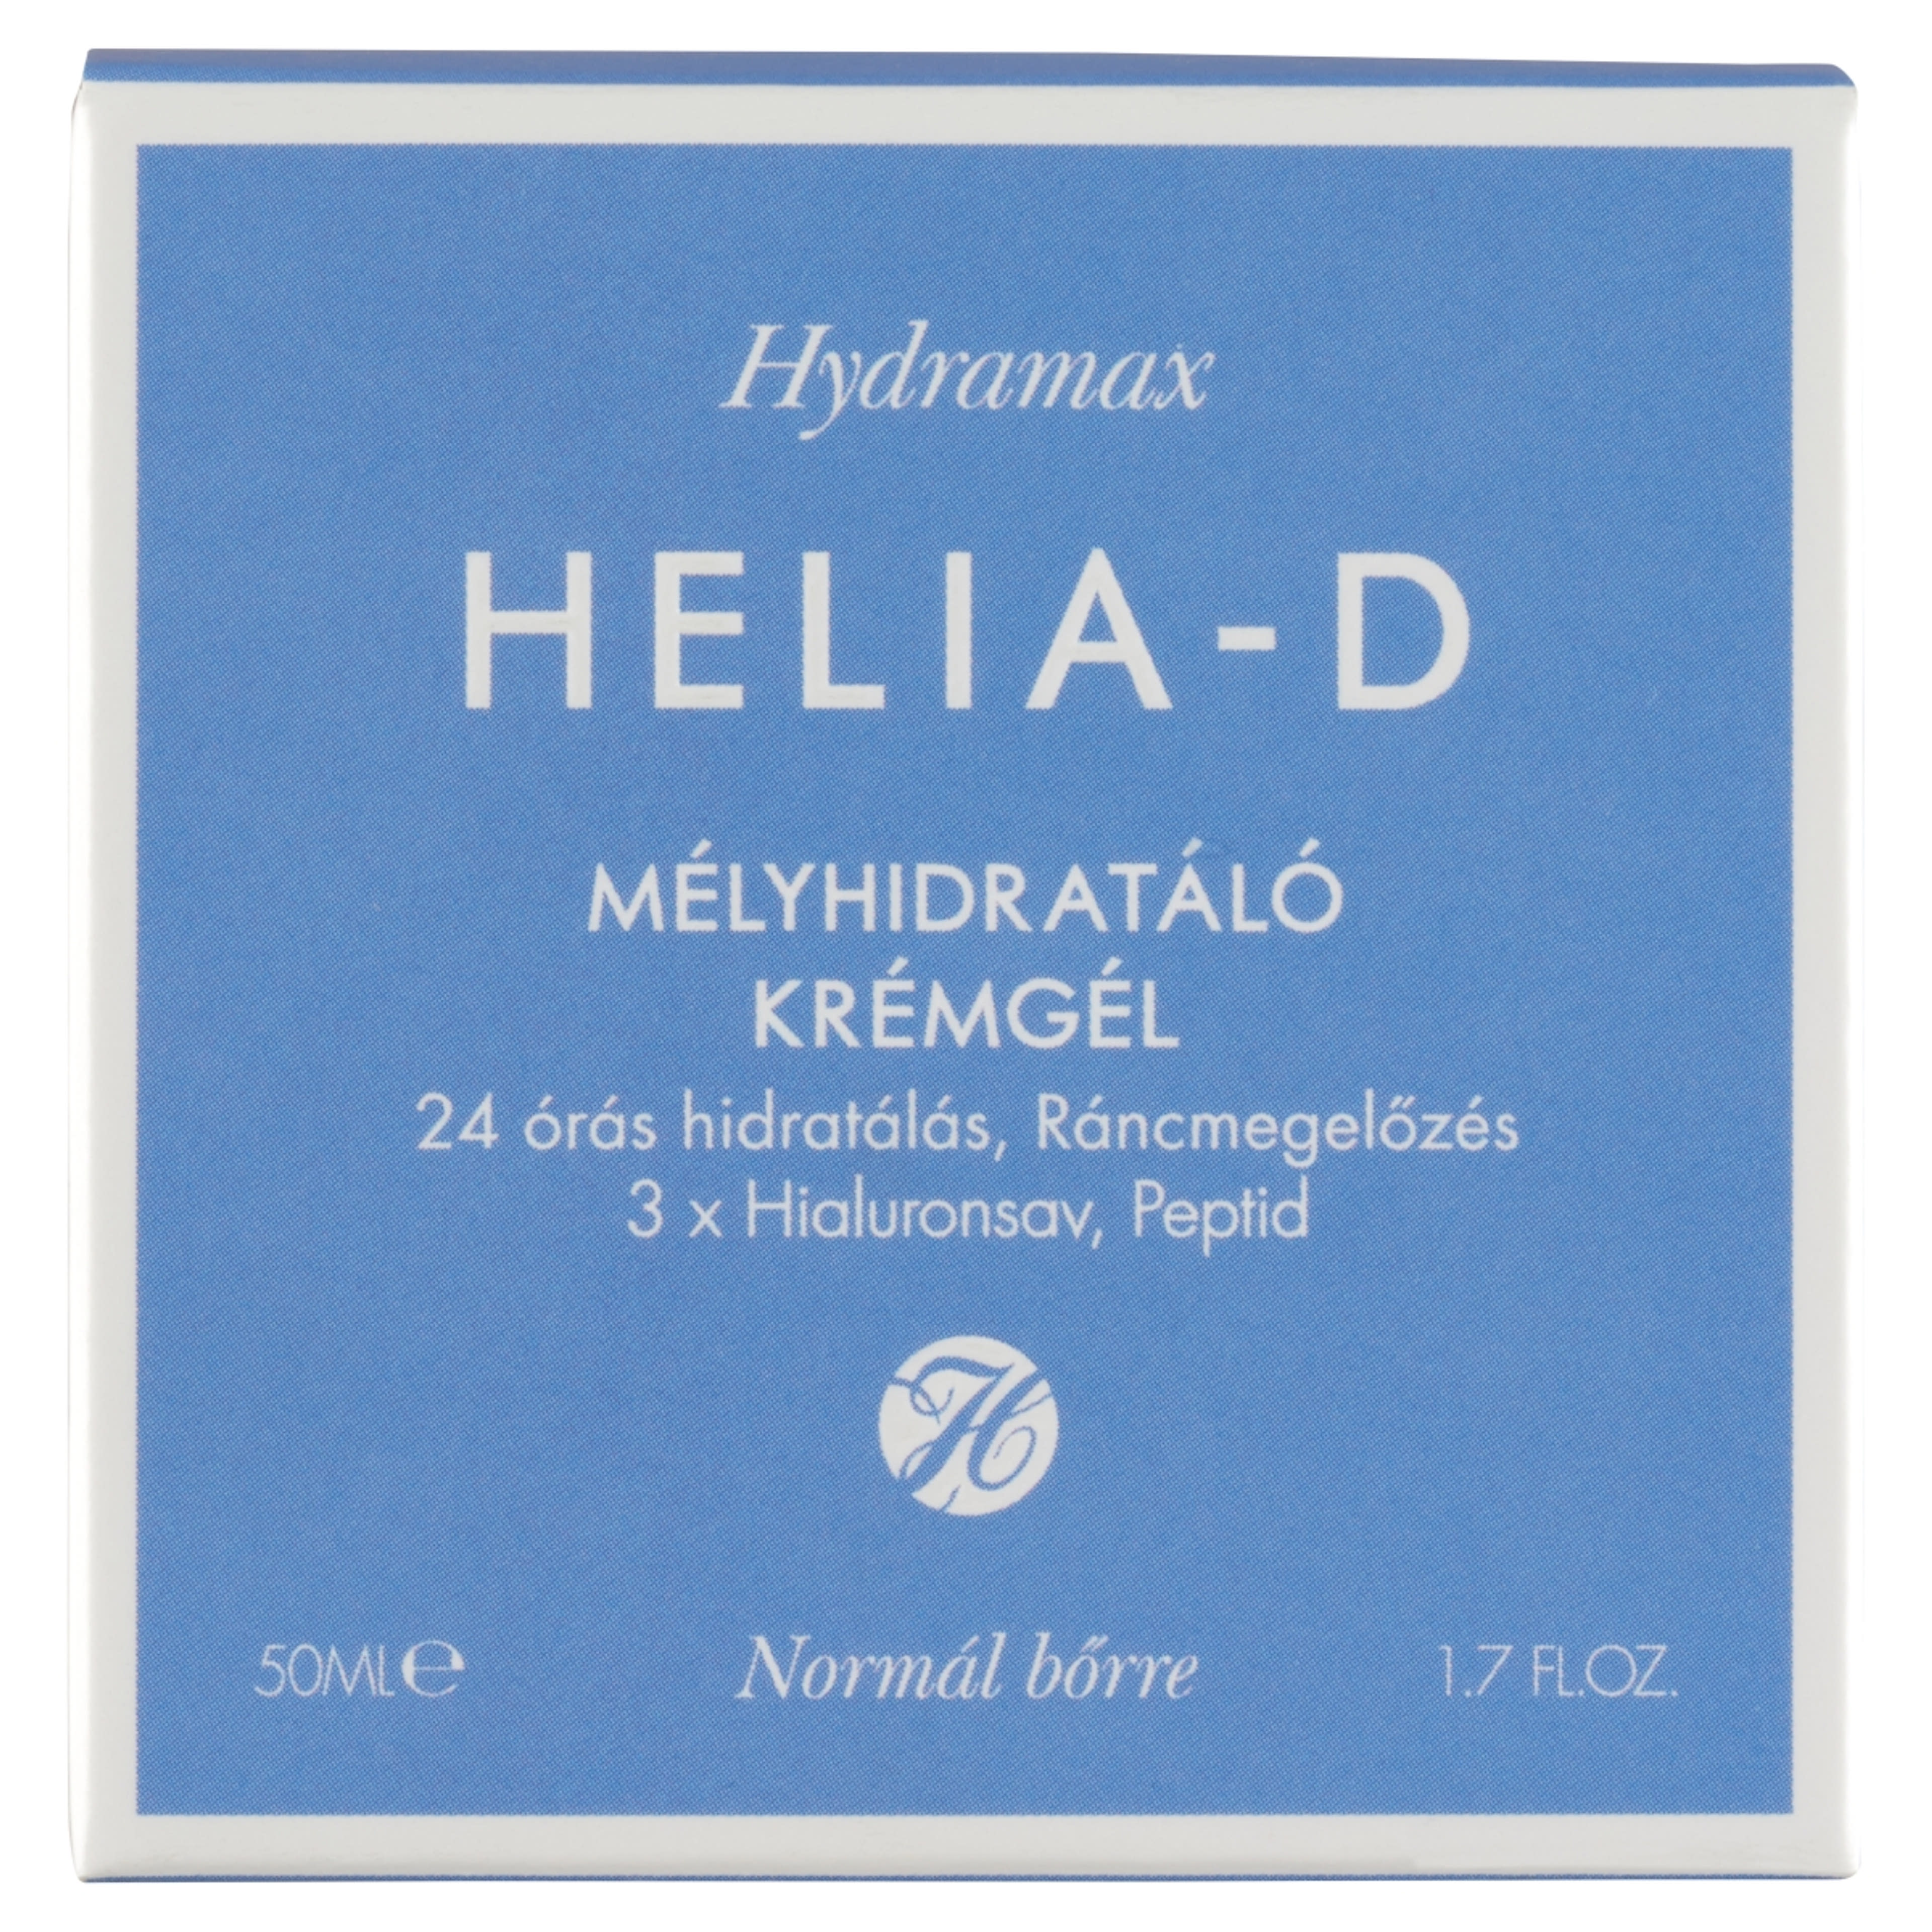 Helia-D Hydramax mélyhidratáló krémgél normál bőrre - 50 ml